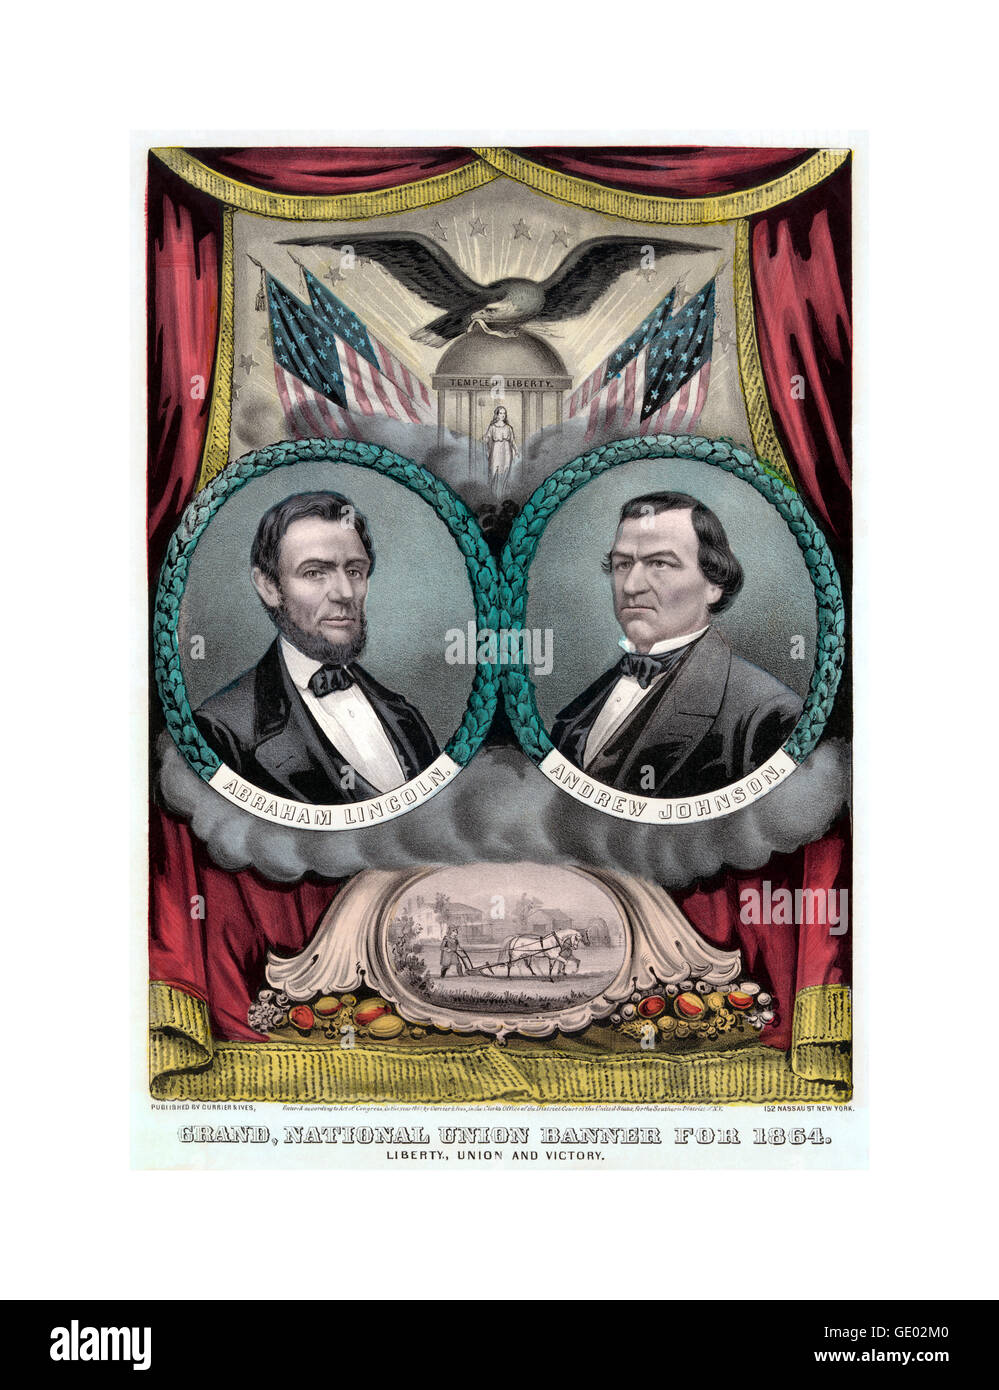 Présidentielle républicaine des Etats-Unis, 1864 affiche montre une bannière de la campagne pour le candidat présidentiel républicain Abraham Lincoln et colistier Andrew Johnson. Banque D'Images